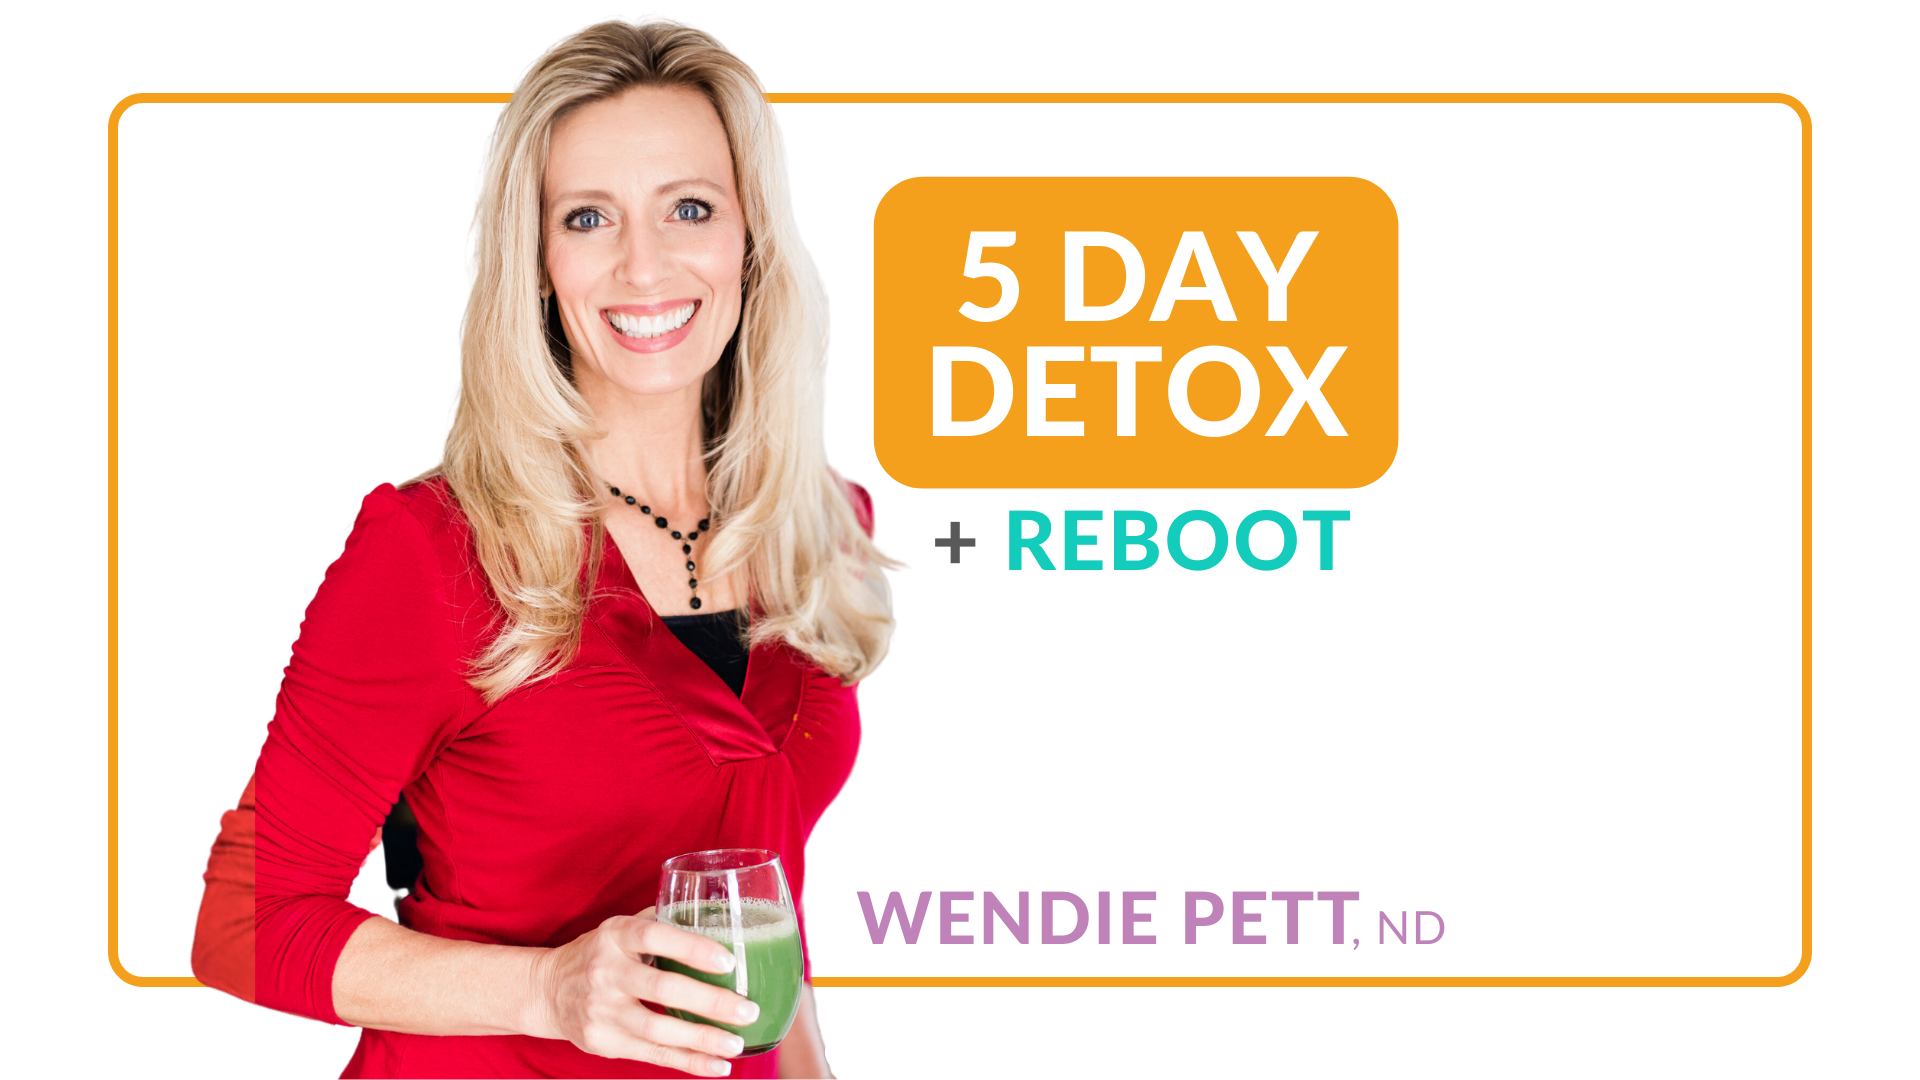 5 Day Detox + Reboot Challenge with Wendie Pett, ND